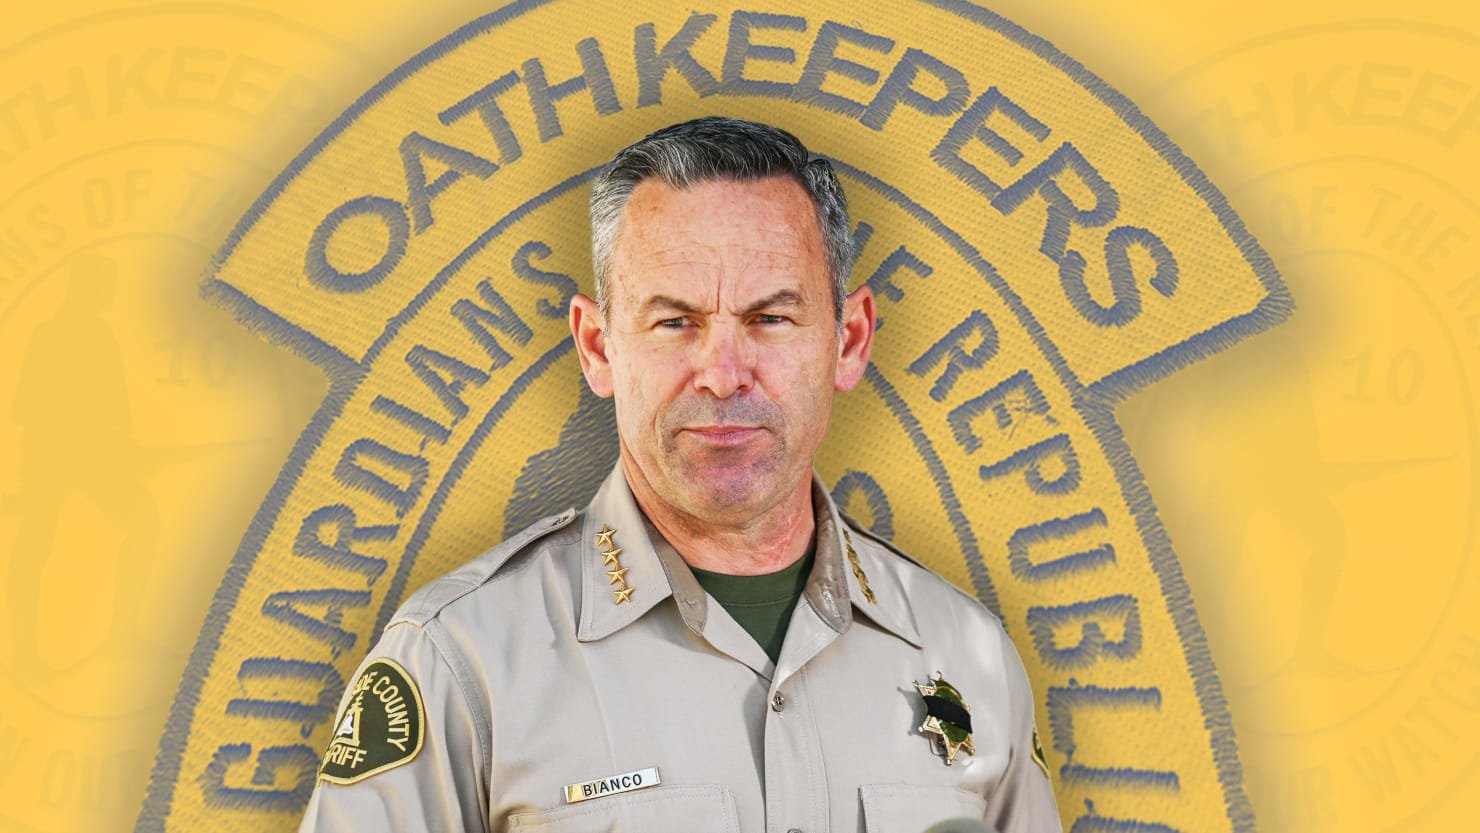 Will Fox News-Loving Sheriff Chad Bianco’s Oath Keeper Ties Cost Him His Job?